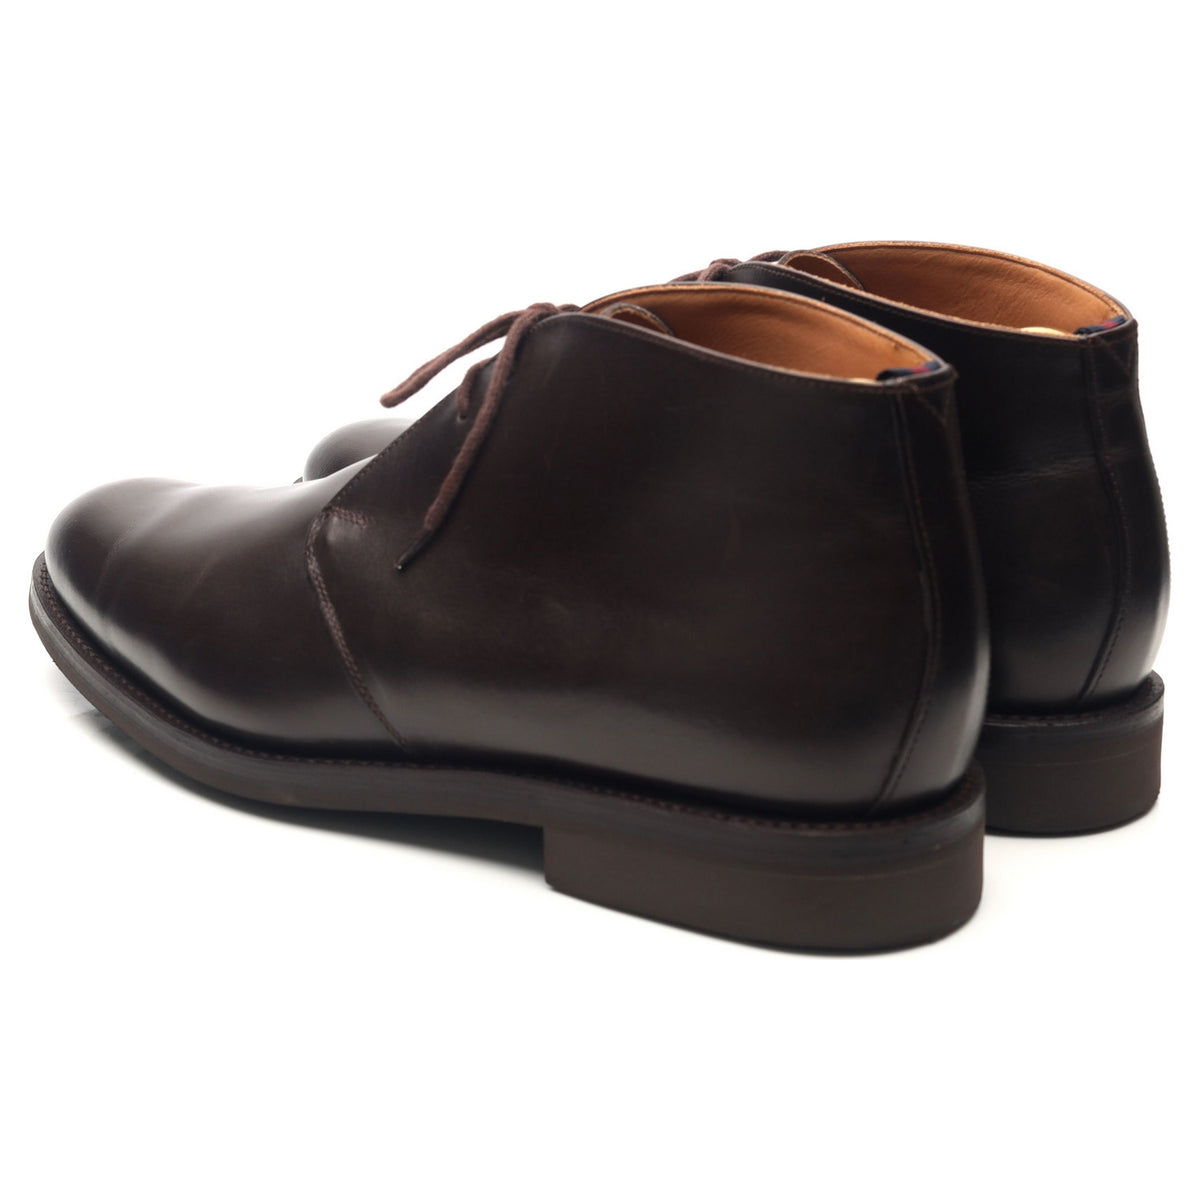 &#39;Dublin&#39; Dark Brown Leather Chukka Boots UK 9.5 F